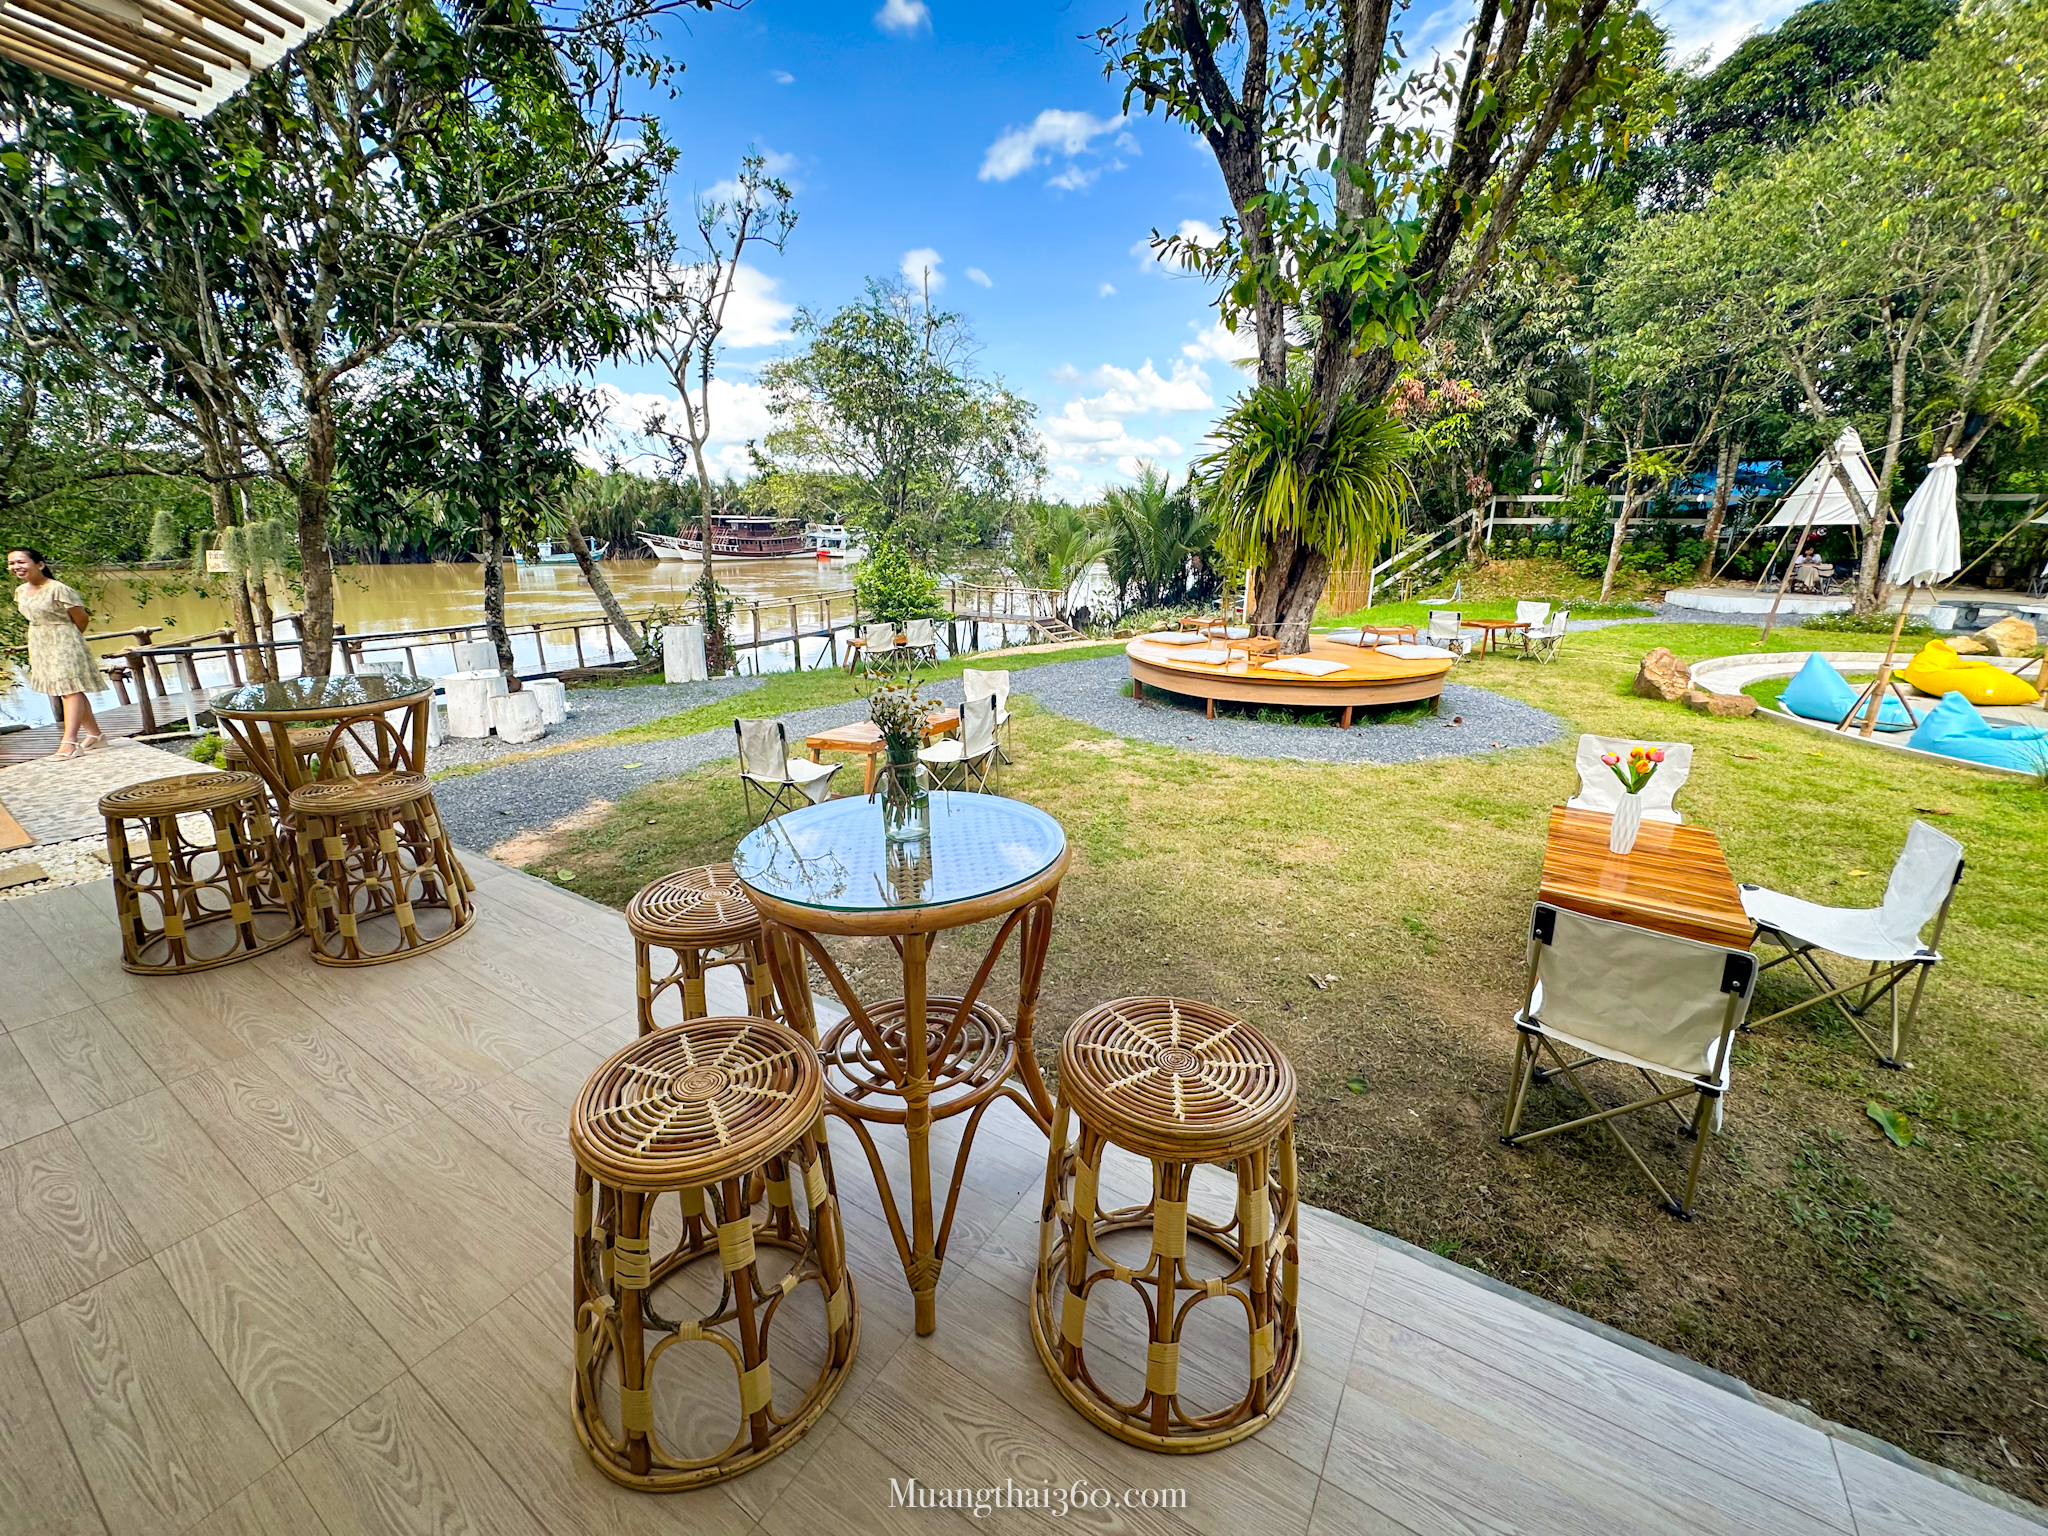 รูปภาพของ Blue Mango View Cafe คาเฟ่ริมแม่น้ำตรัง